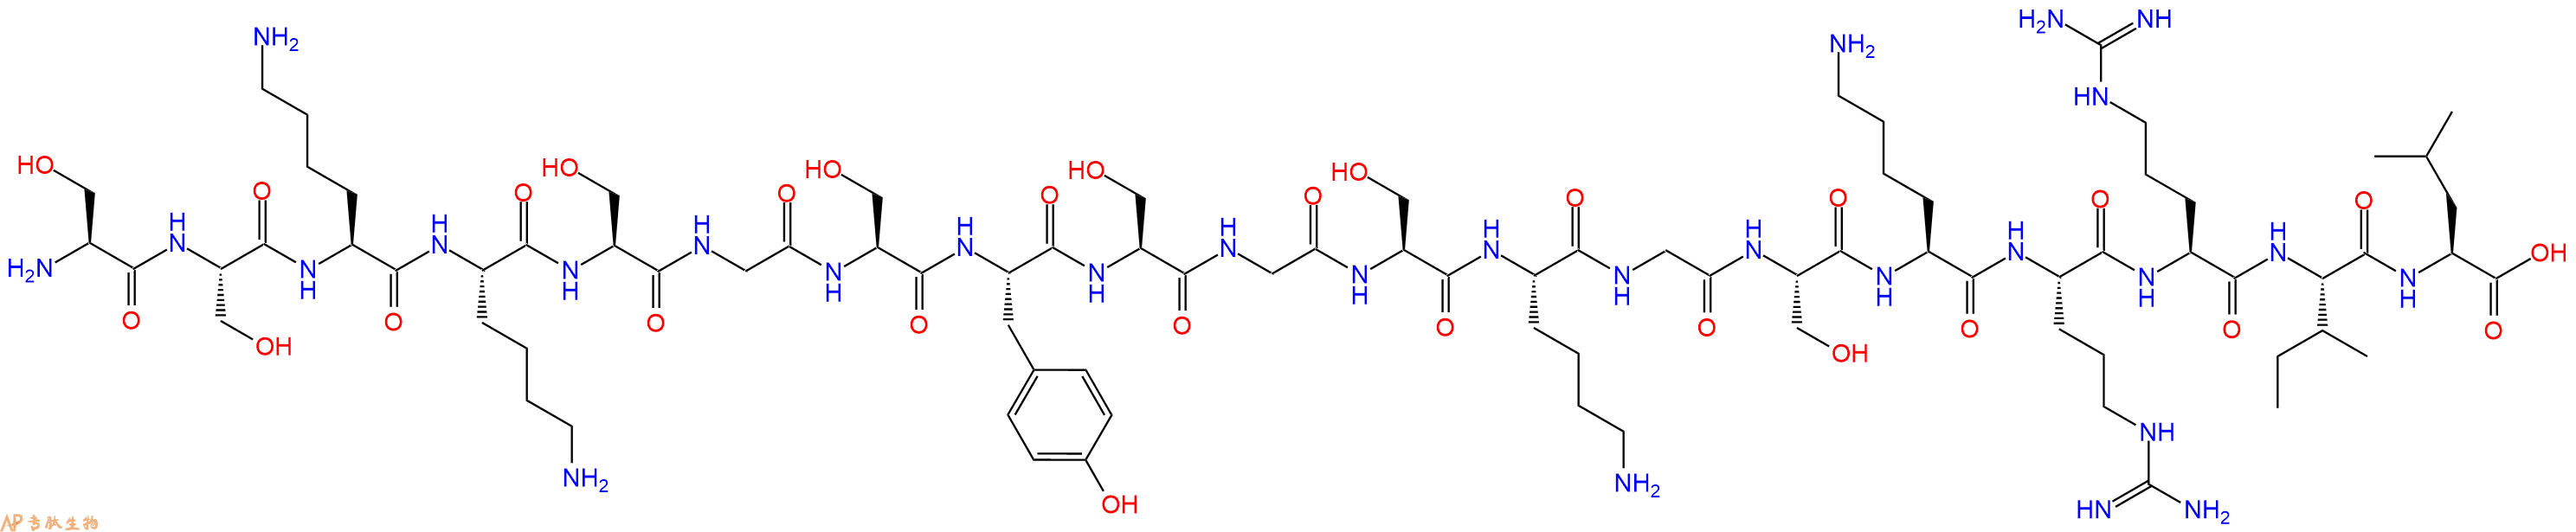 专肽生物产品十九肽SSKKSGSYSGSKGSKRRIL